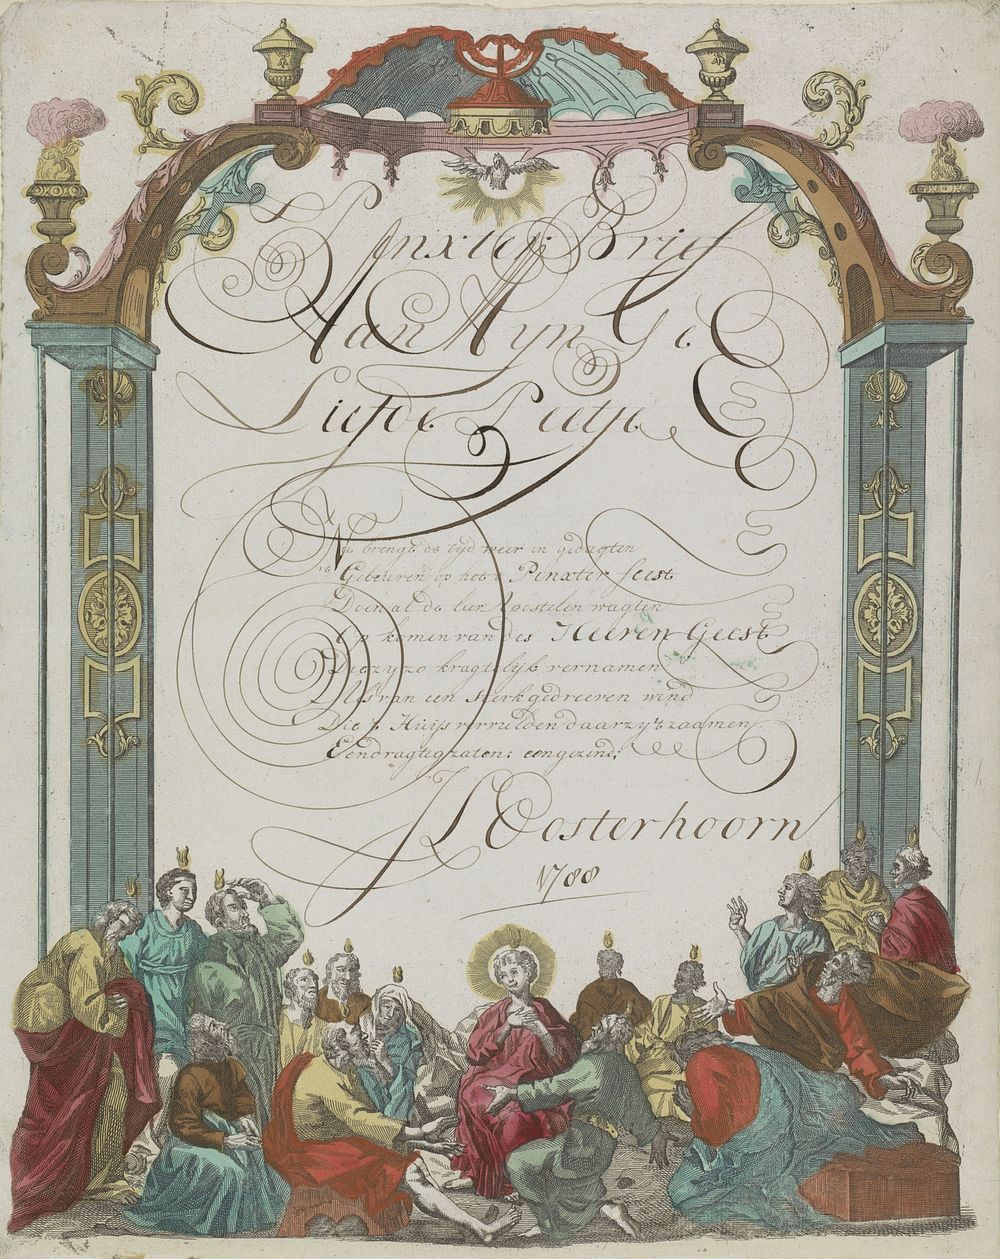 Wensbrief met de neerdaling van de Heilige Geest (1788) by anonymous and anonymous